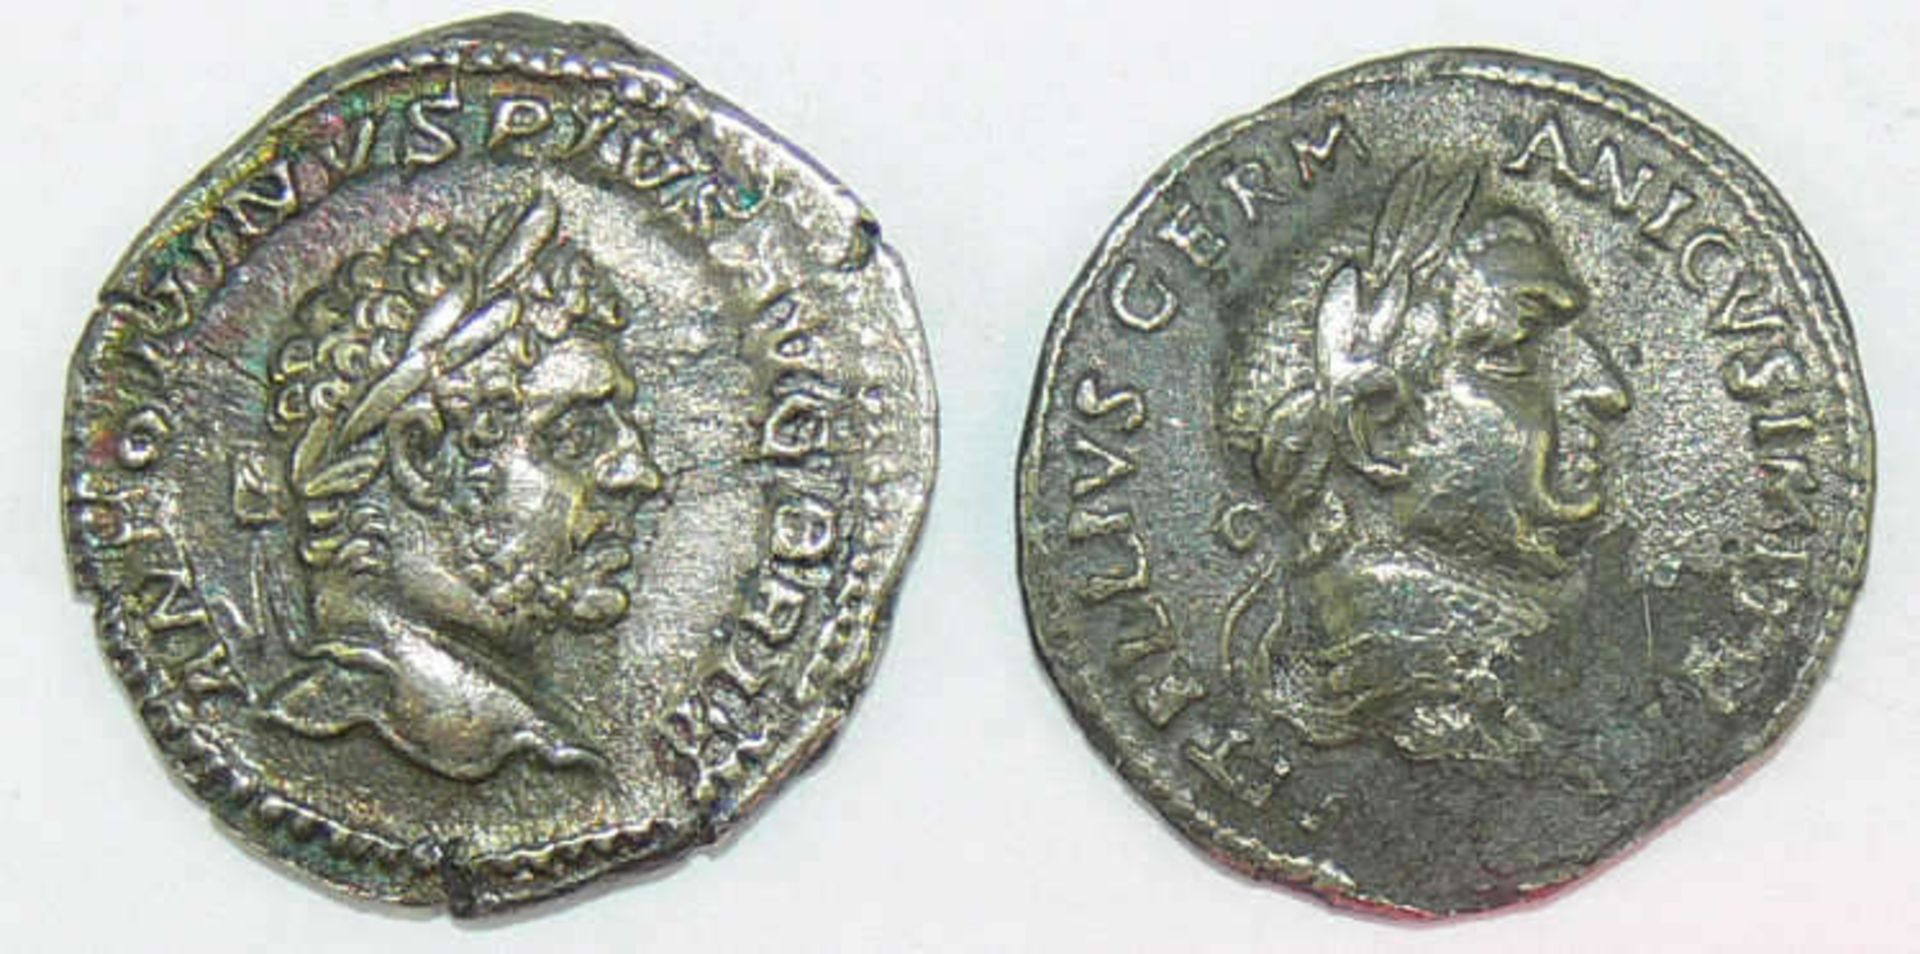 Römische Kaiserzeit, zwei Silbermünzen: 1. Vitellius, Denare und Antonius Pius, Denare.Vz.